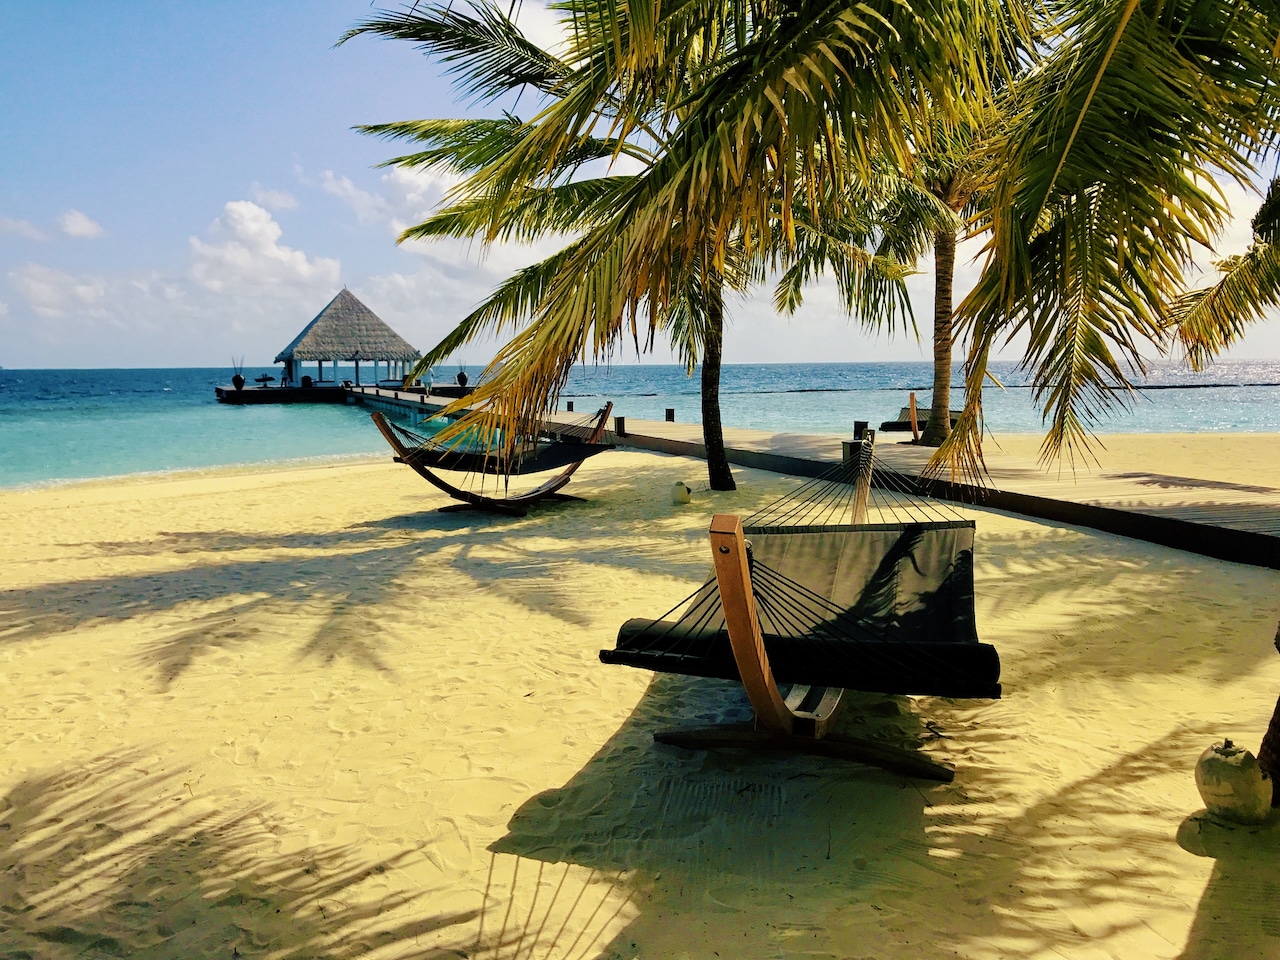 L'île balnéaire cinq étoiles de Coco Bodu Hithi a reçu des critiques extrêmement positives de la part des clients sur HolidayCheck, TripAdvisor et booking.com. Photo : Sascha Tegtmeyer